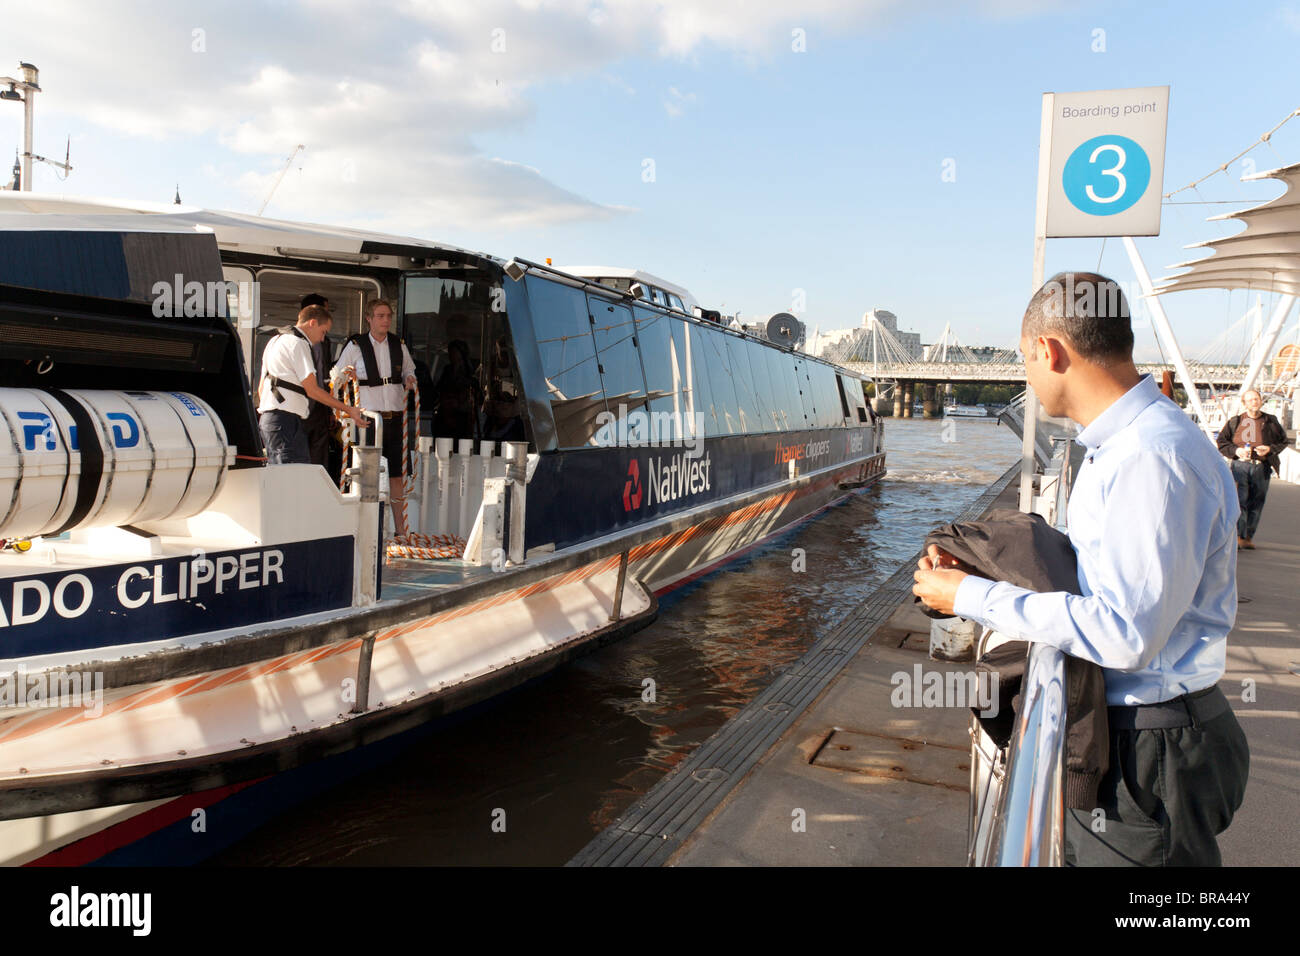 London River services - Thames Clipper - London Eye Pier - London Stock Photo